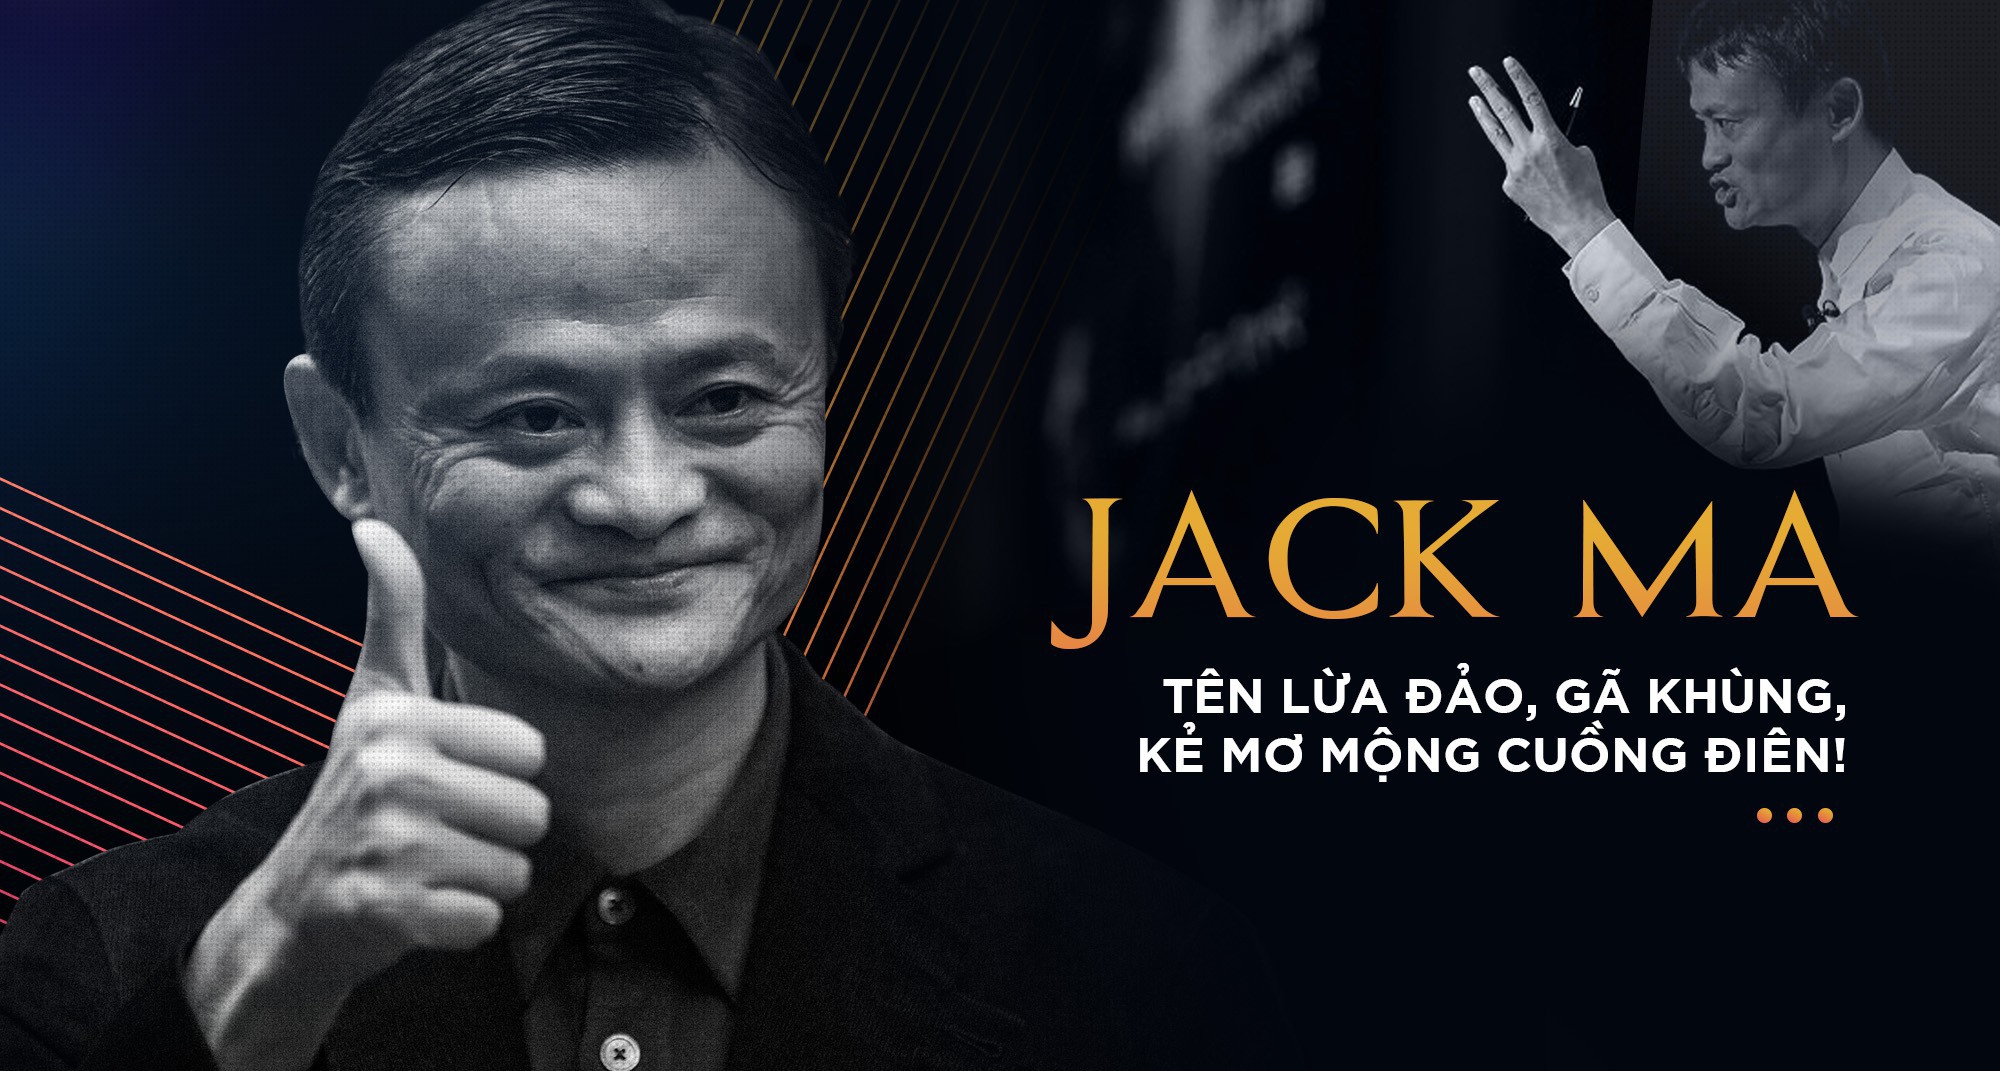 Viecngay.vn - Thành công của Jack Ma